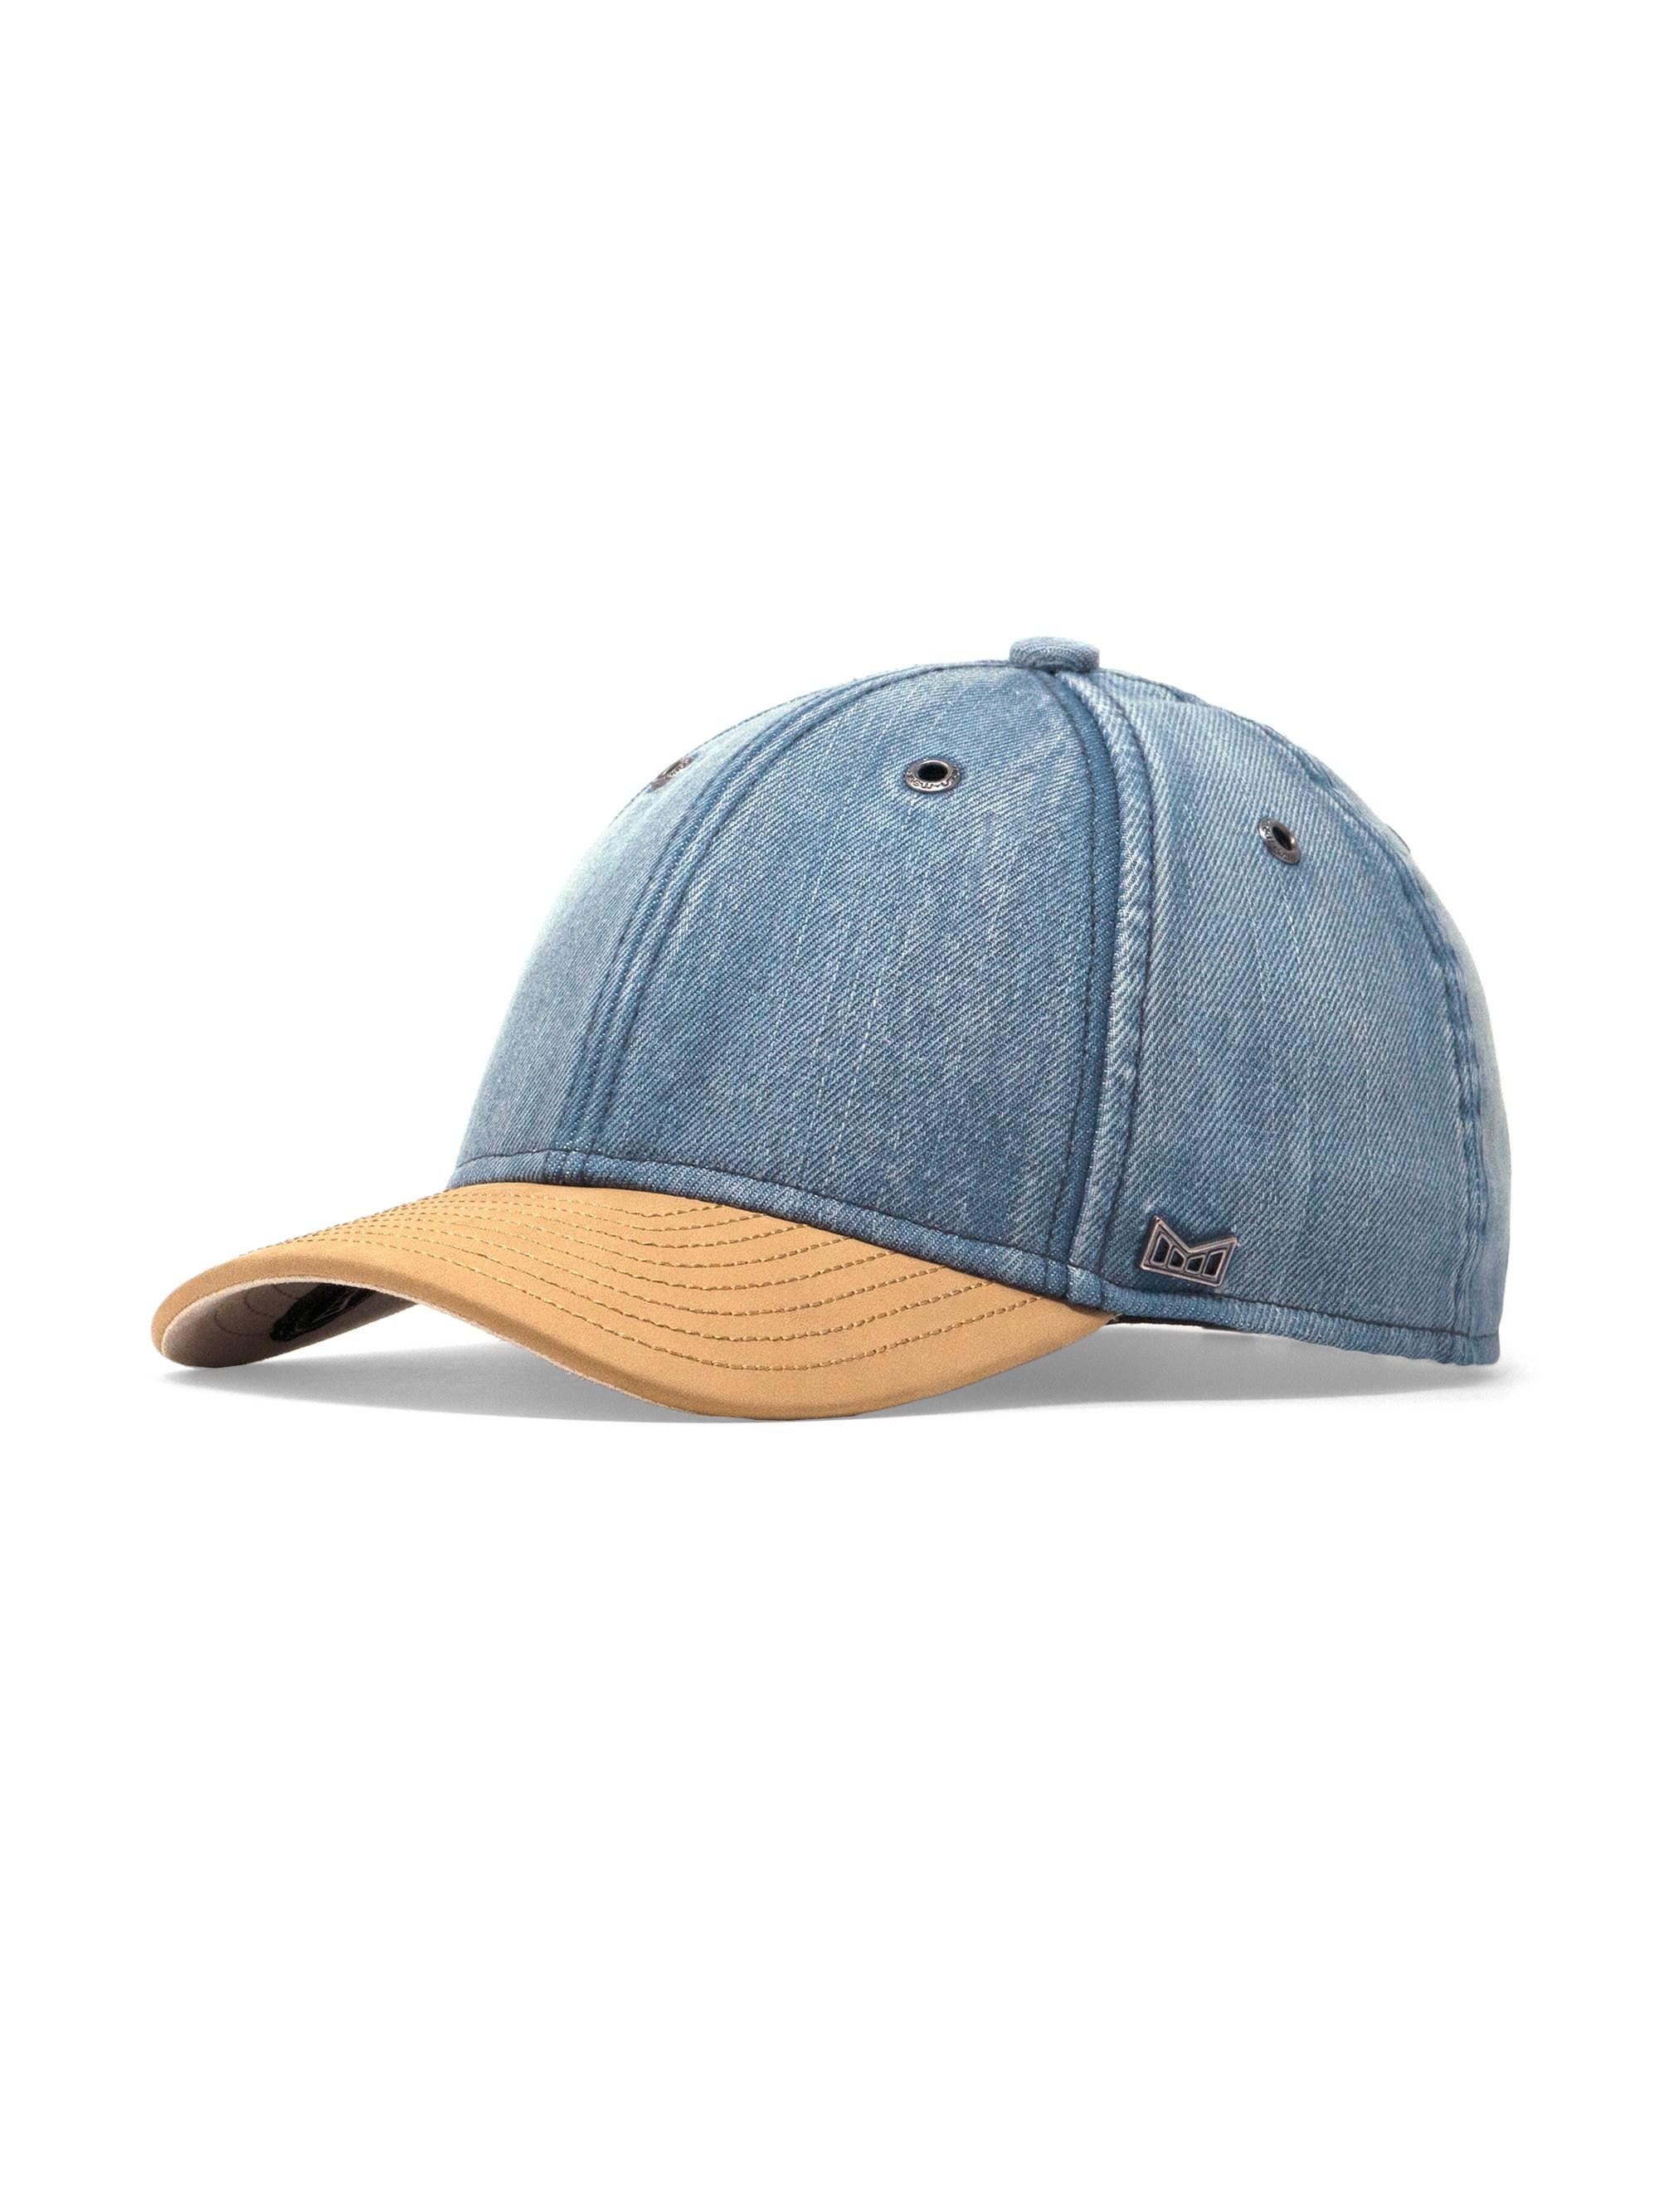 Melin Hesher Mixed Denim Hat in Blue for Men - Lyst